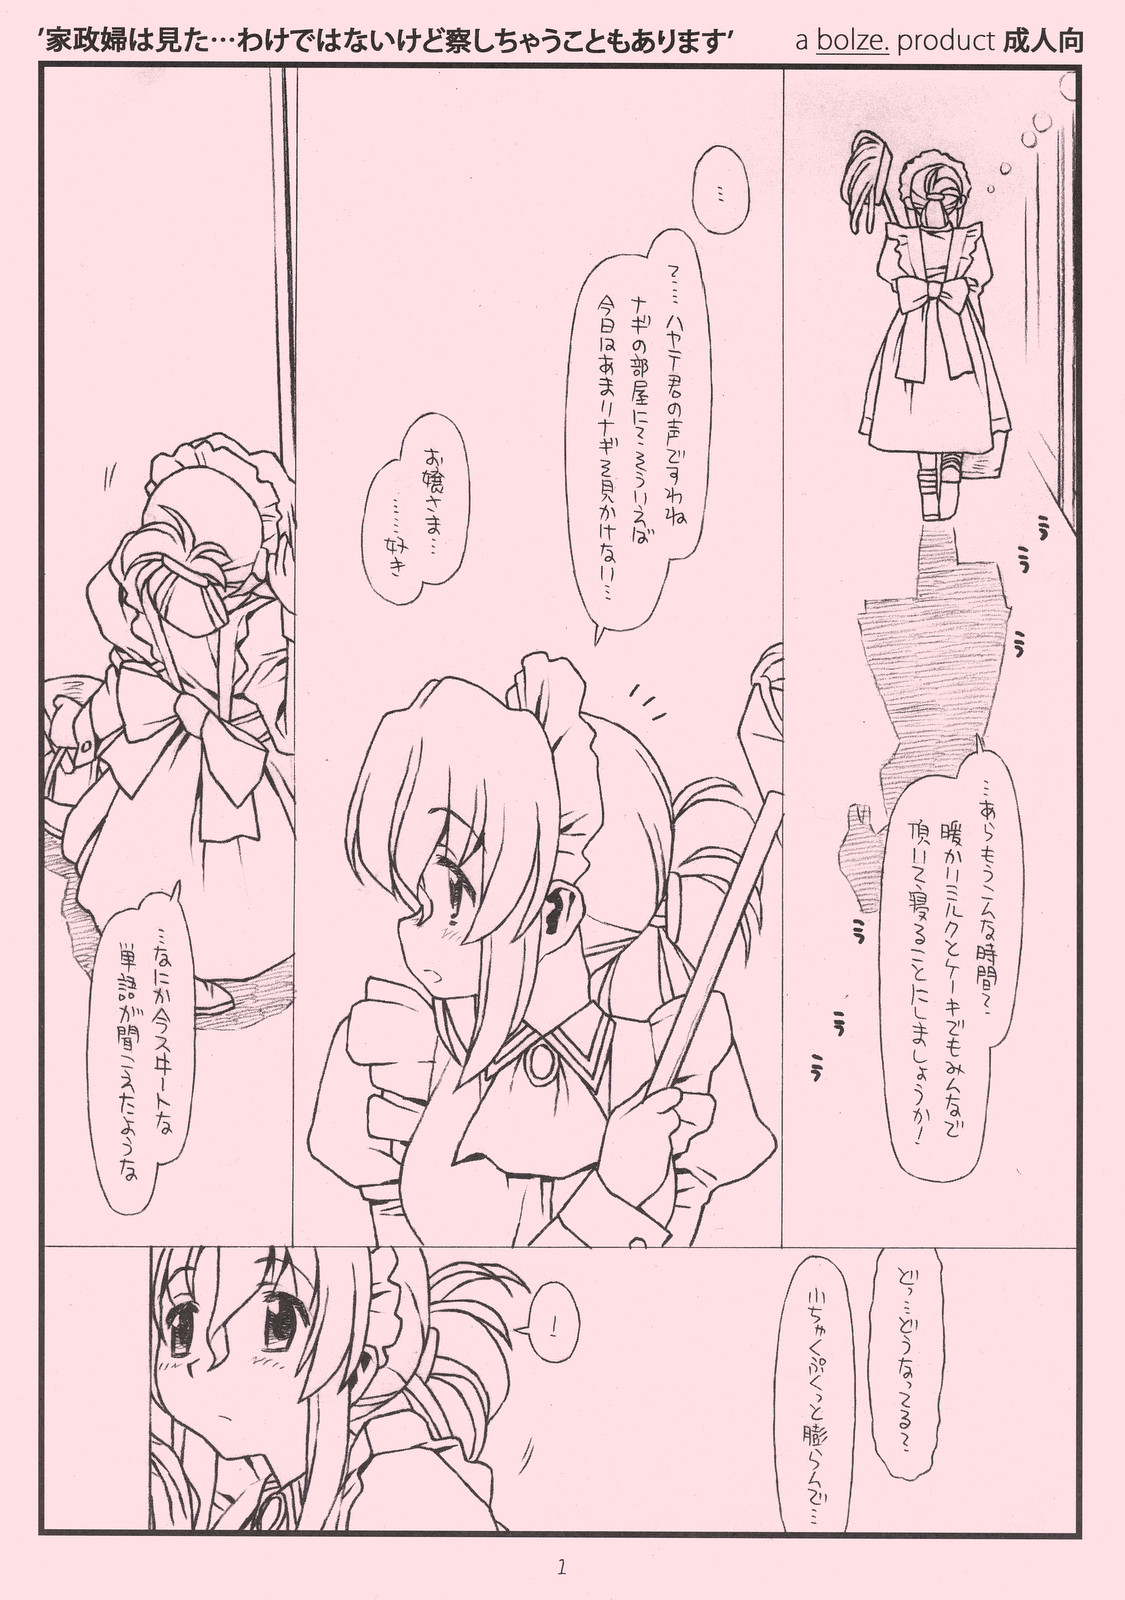 [bolze.] kaseifu wa mita ... wake de ha nai kedo sasshi chau koto mo ari masu (hayate no gotoku!) page 1 full